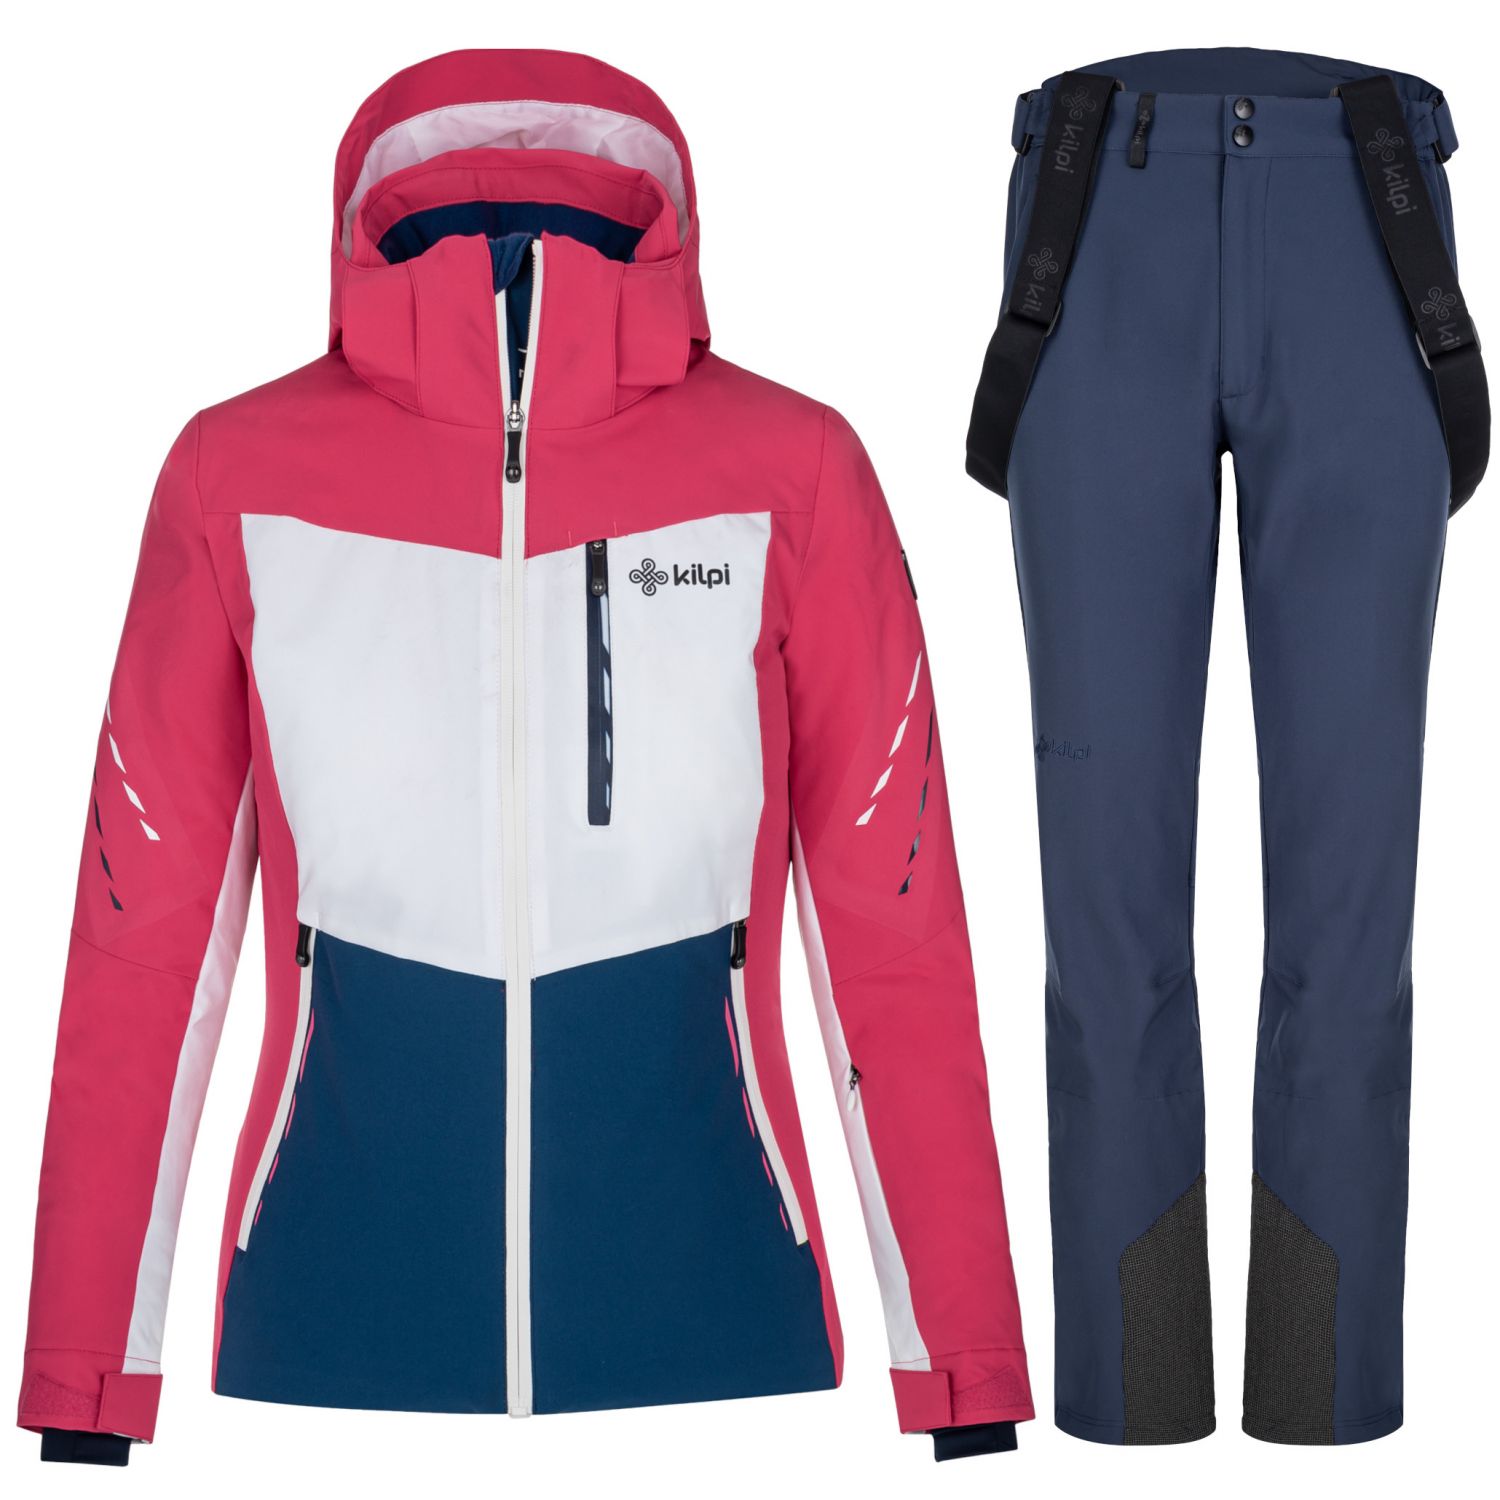 Kilpi Valera/Rhea, skisæt, dame, pink/blå